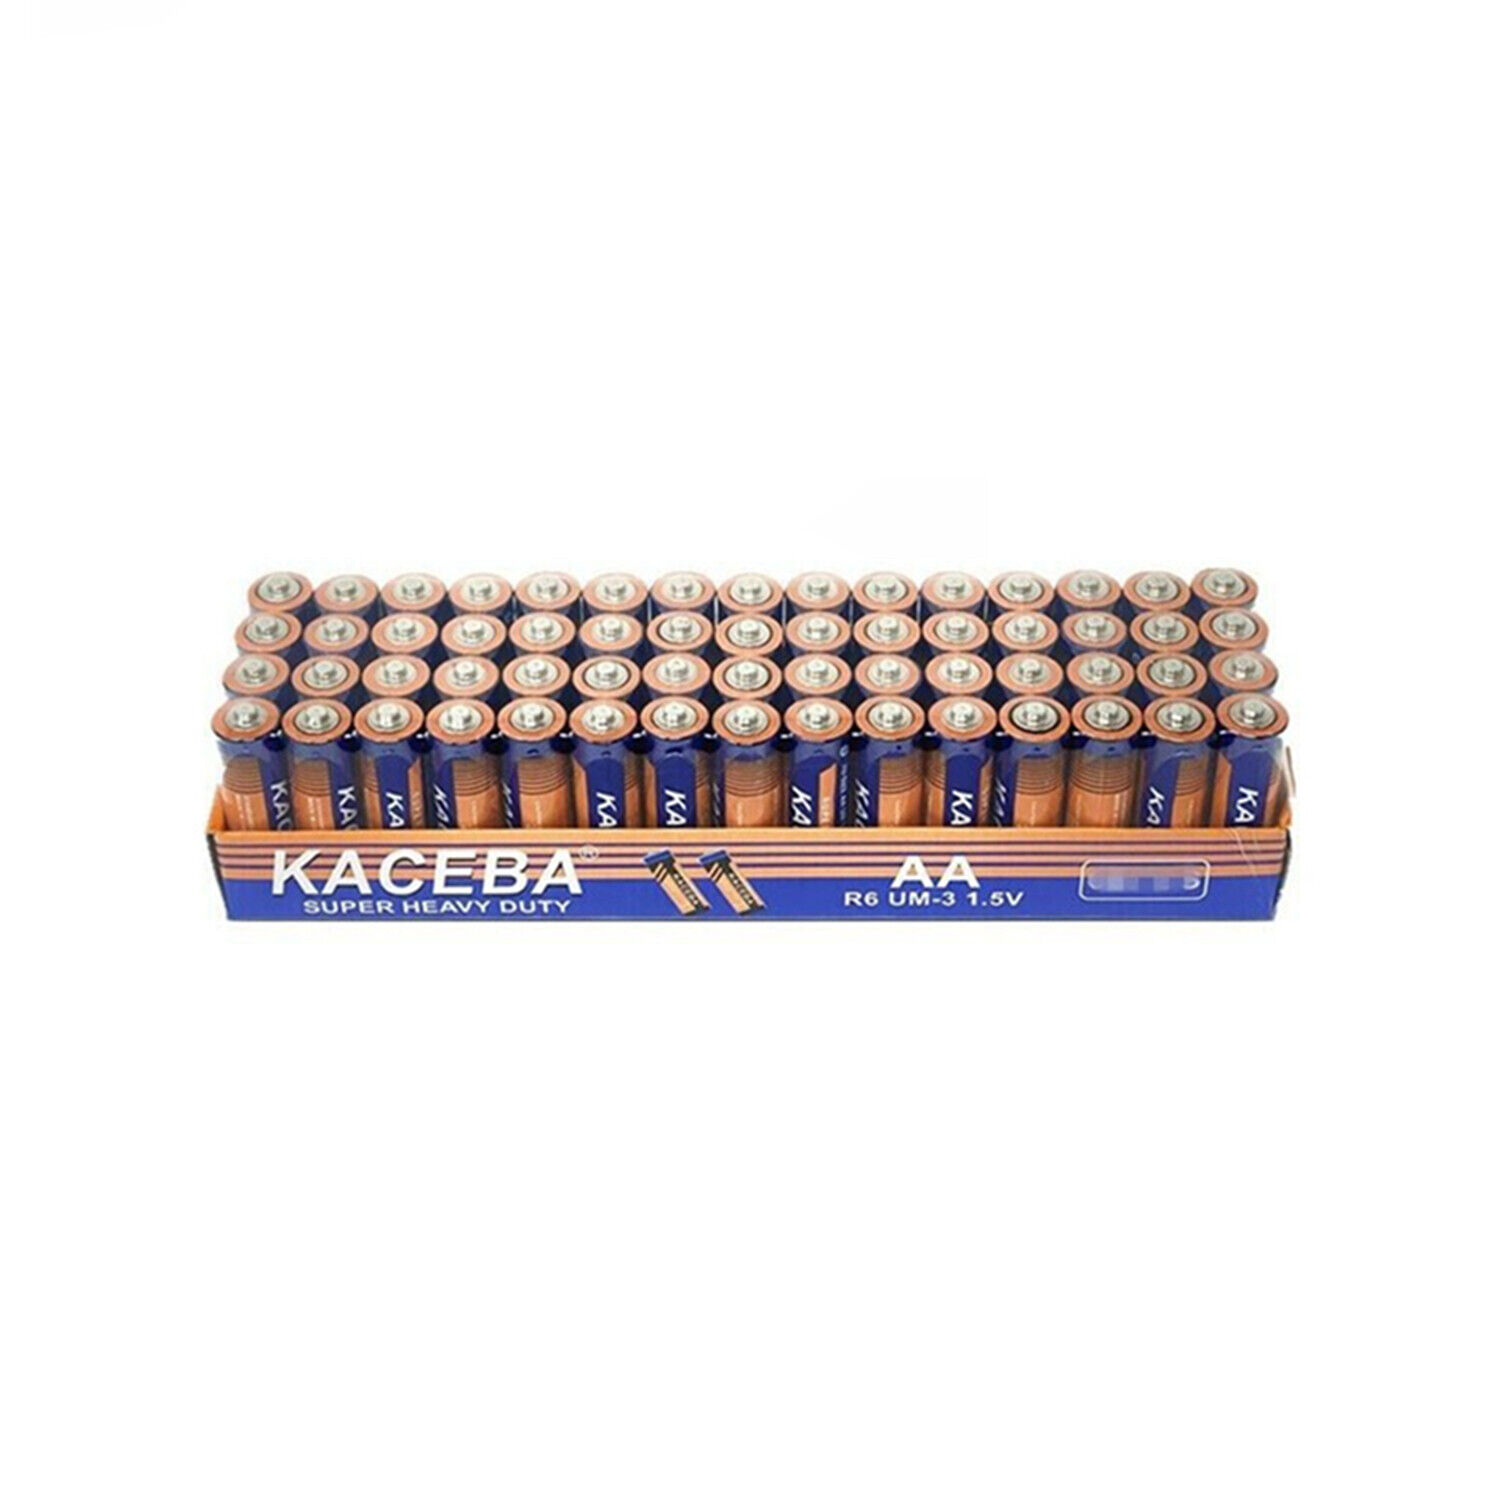 100 AA or 100 AAA Batteries EXTRA Heavy Duty 1.5 V Wholesale Lot New & Fresh